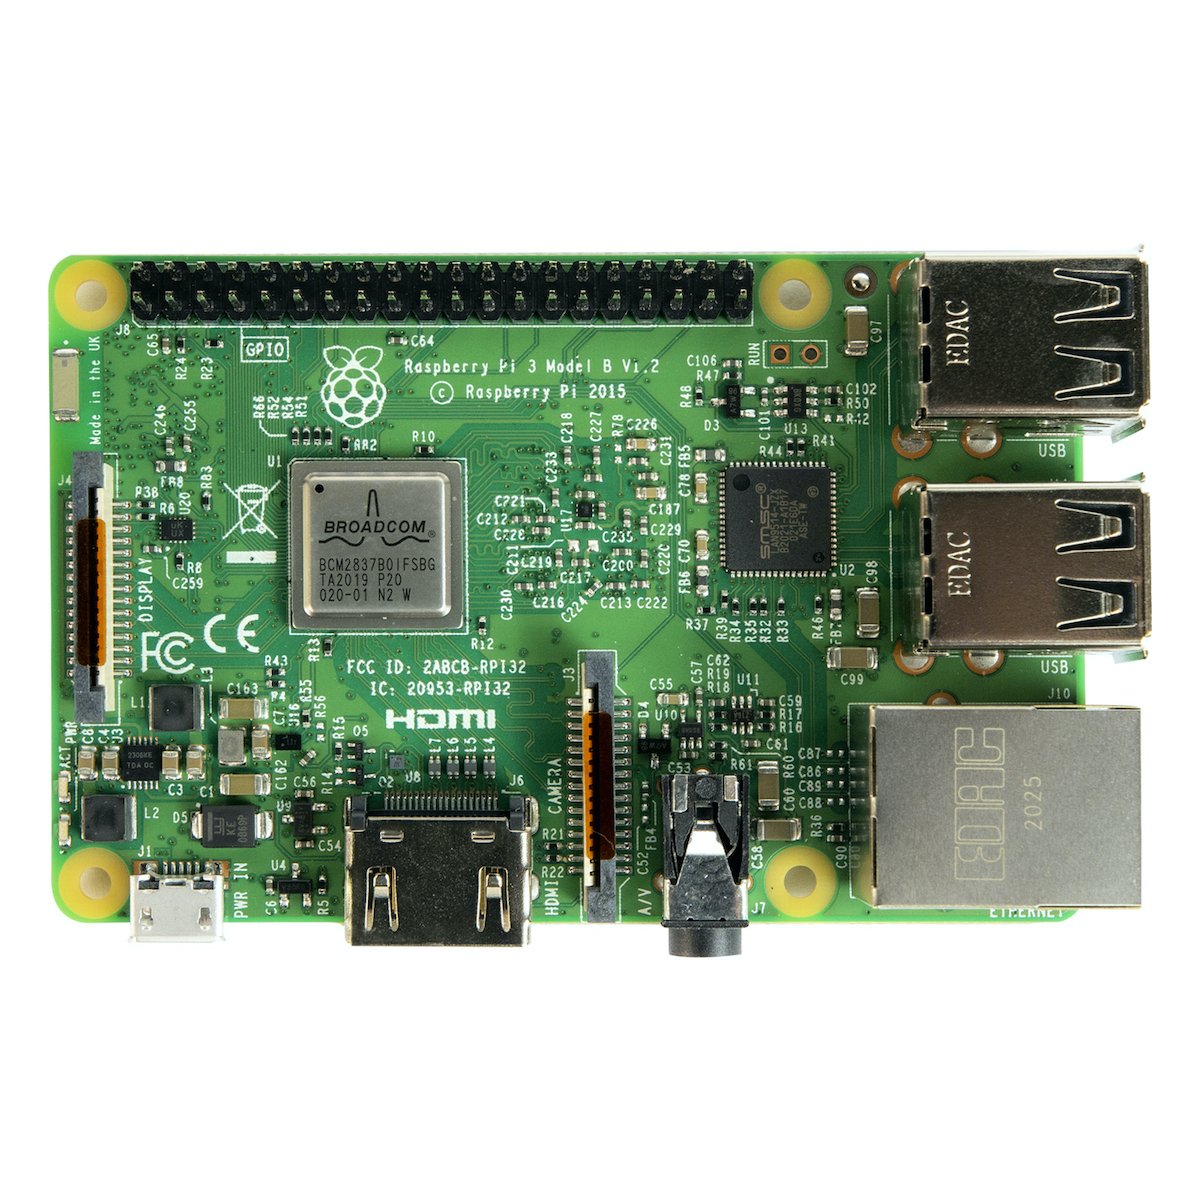 SC0073 Raspberry Pi, Computadoras integradas